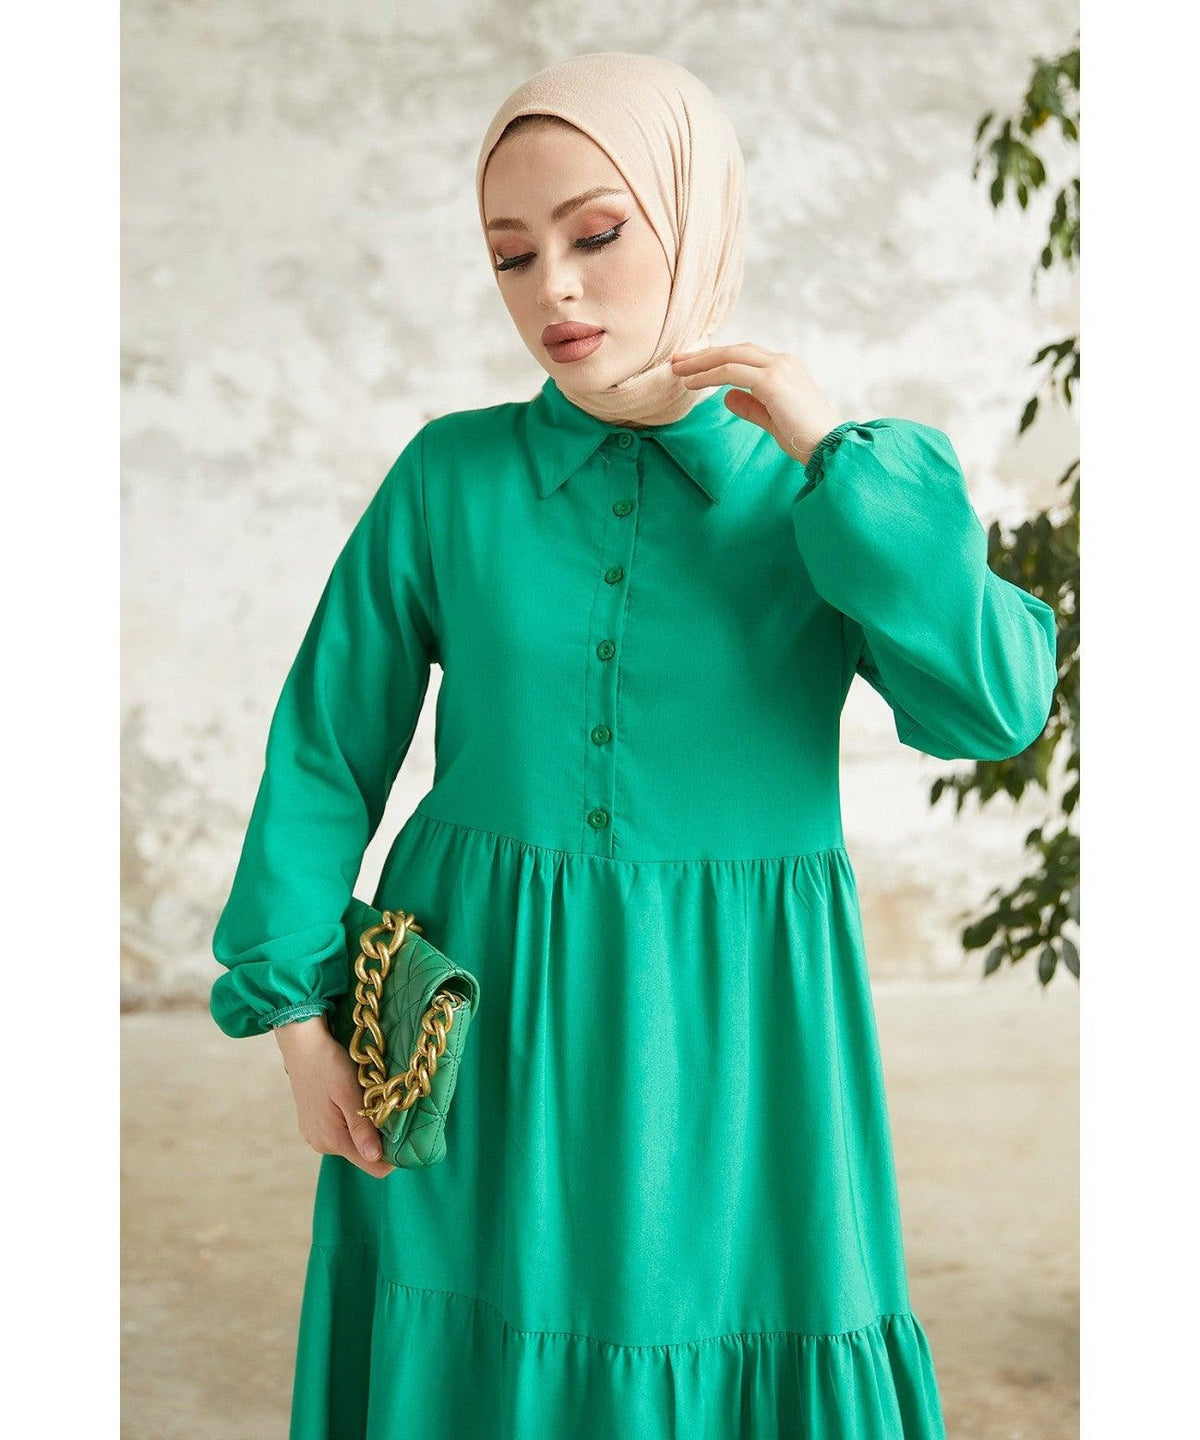 Modest Long Collar Dress for Women - Green